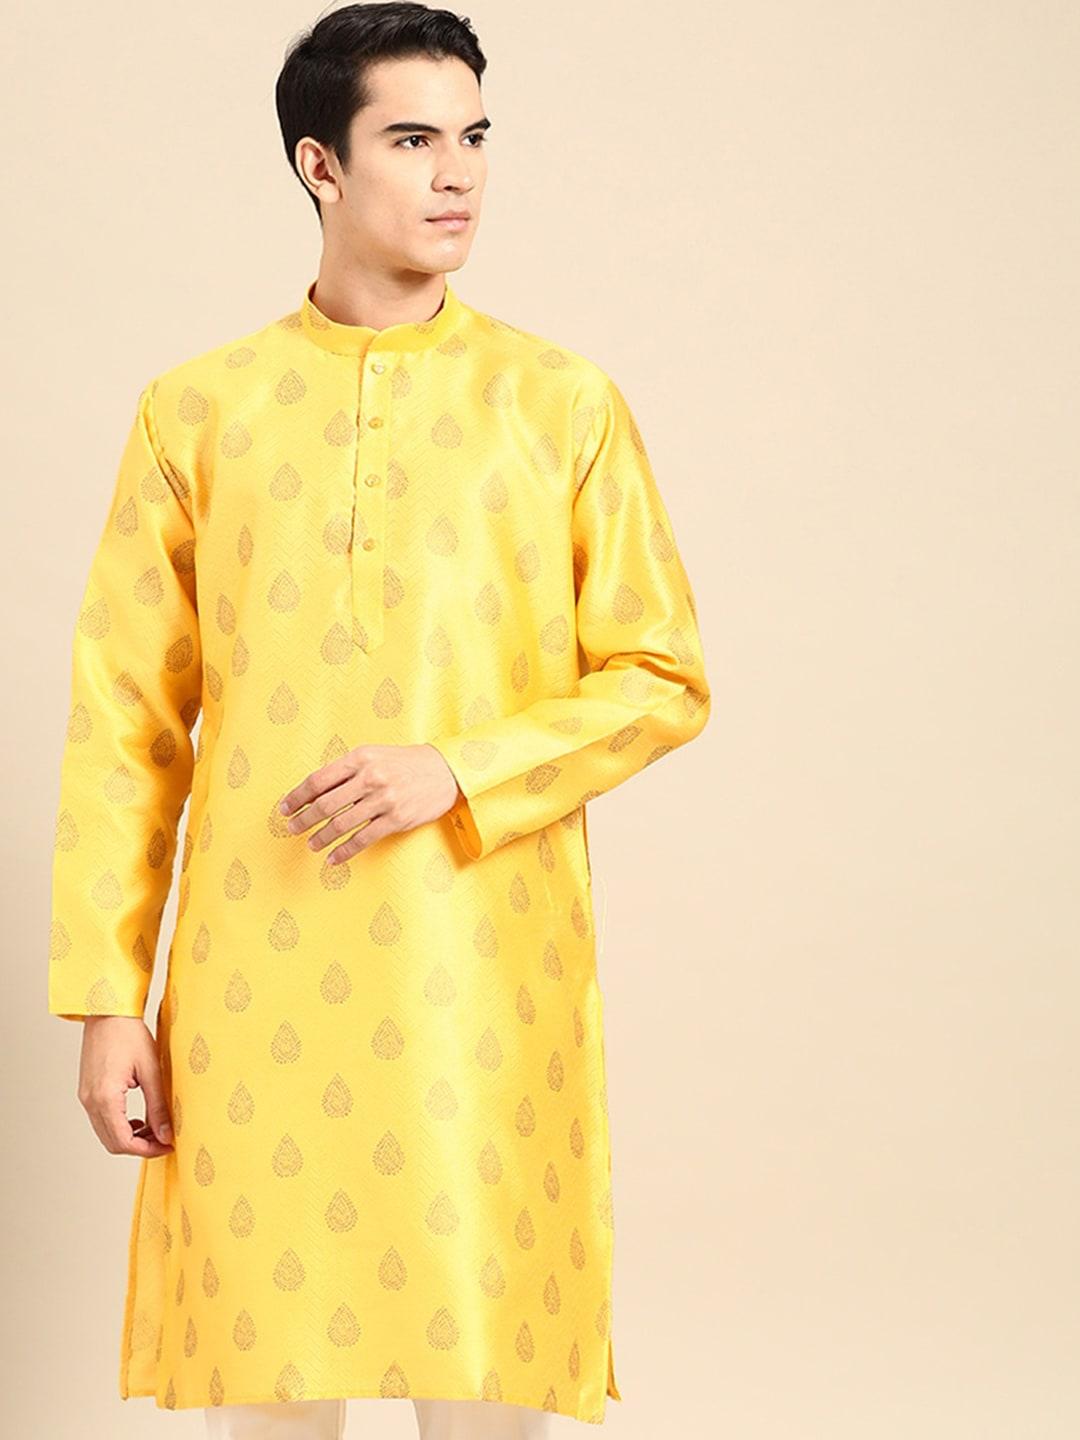 manq ethnic motifs woven design mandarin collar straight kurta